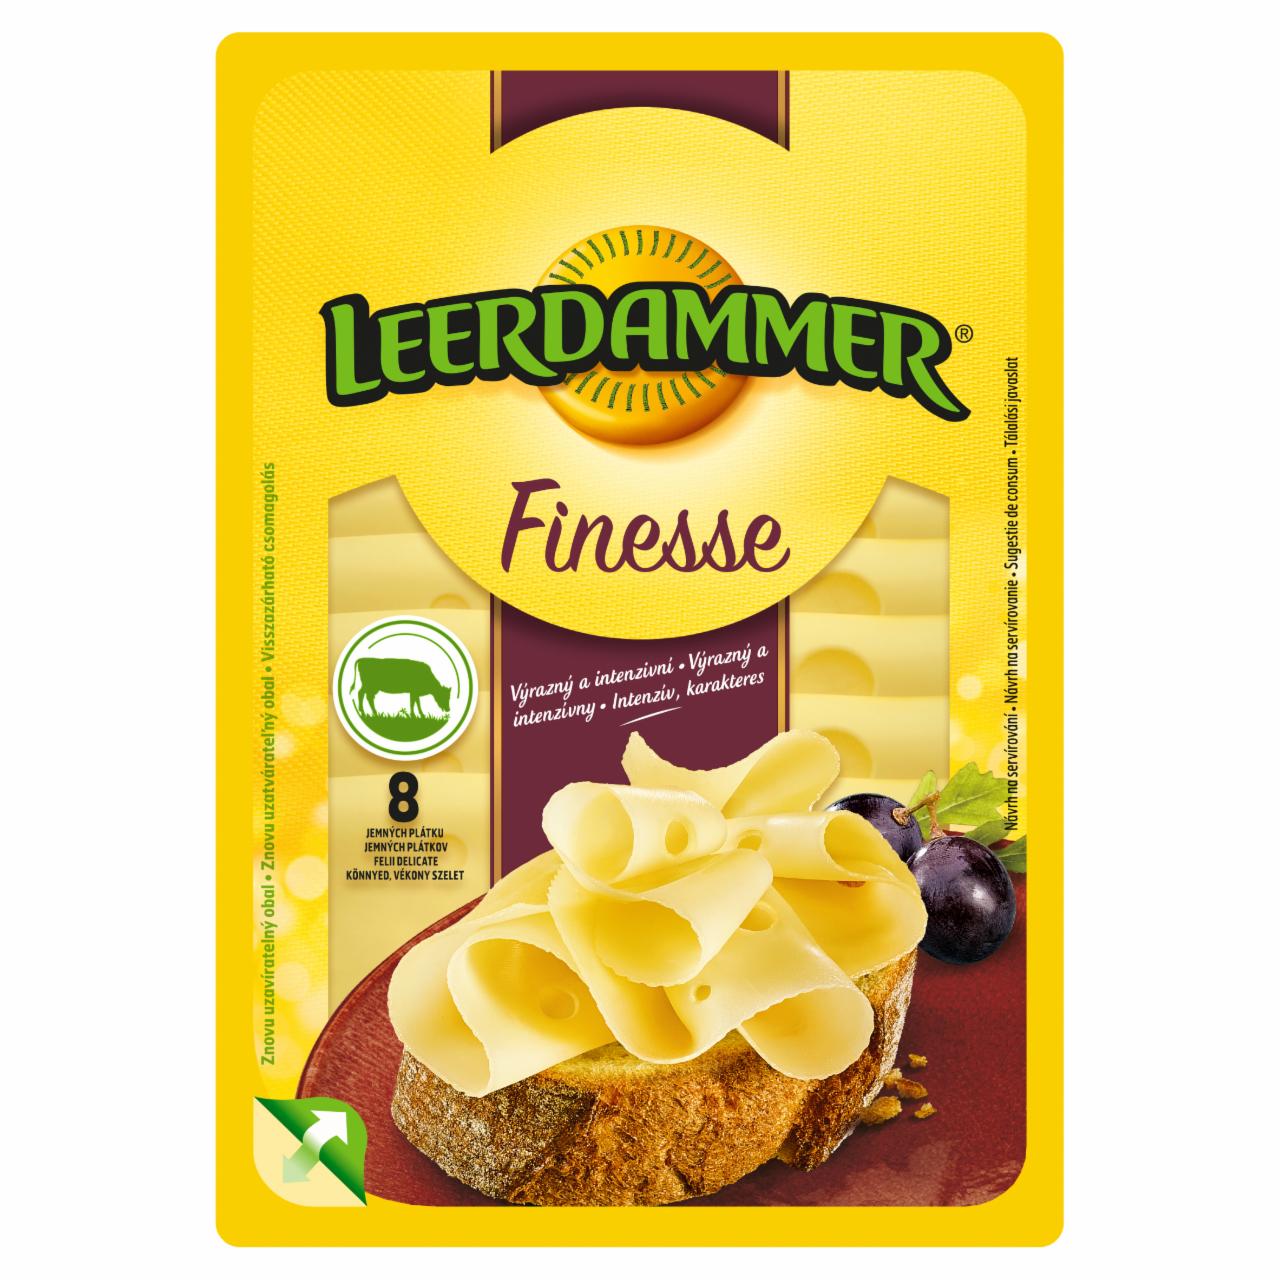 Képek - Leerdammer Finesse Caractère laktózmentes, félkemény, zsíros sajt 8 szelet 80 g